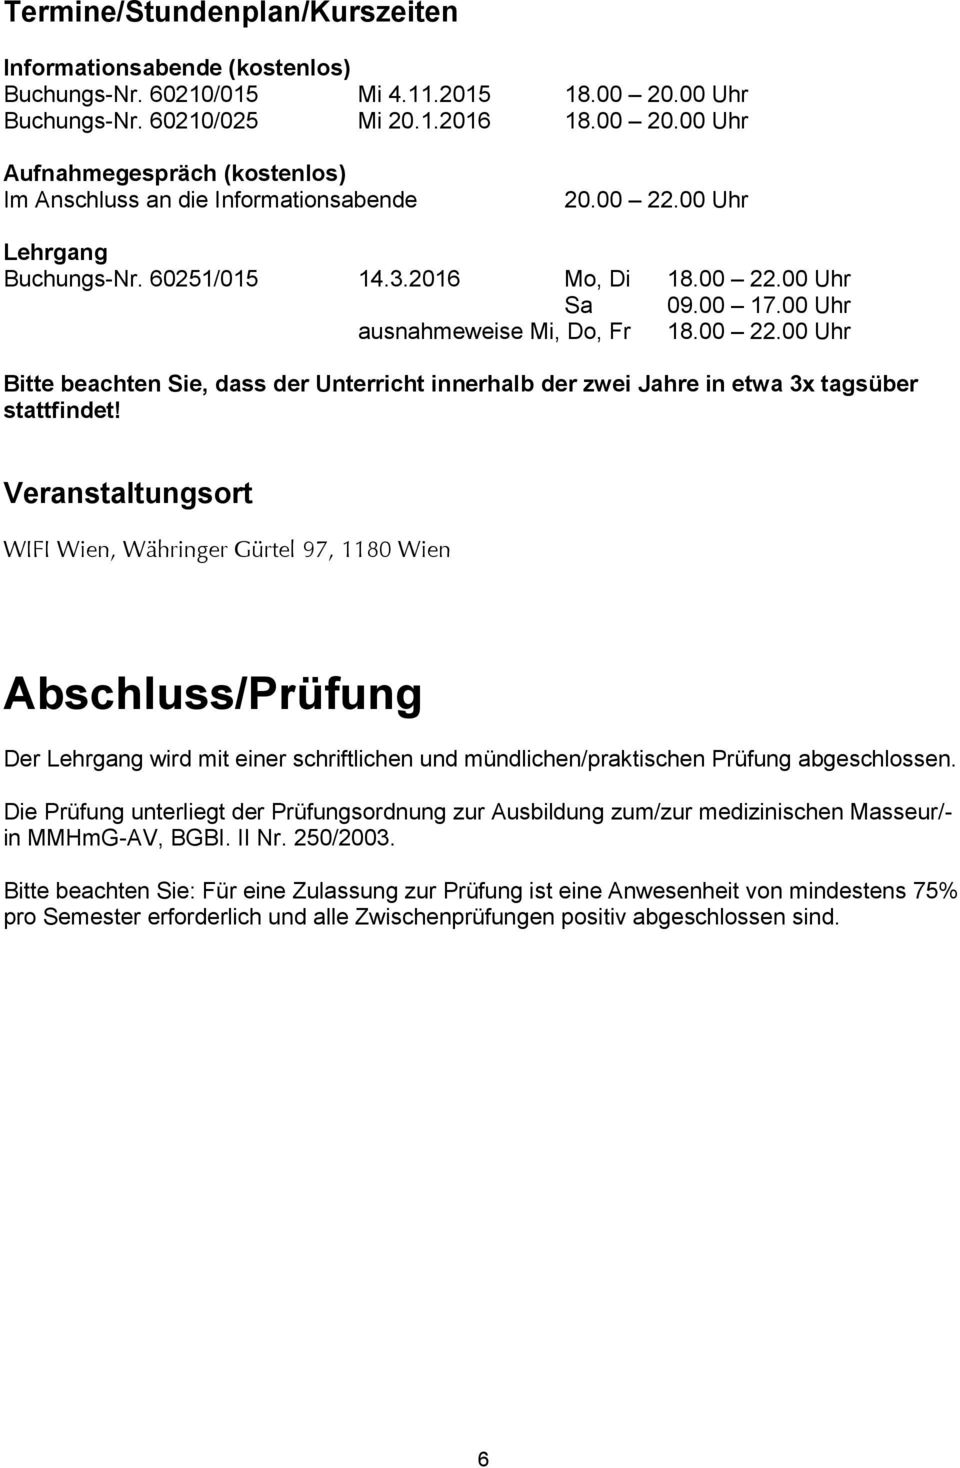 Veranstaltungsort WIFI Wien, Währinger Gürtel 97, 1180 Wien Abschluss/Prüfung Der Lehrgang wird mit einer schriftlichen und mündlichen/praktischen Prüfung abgeschlossen.